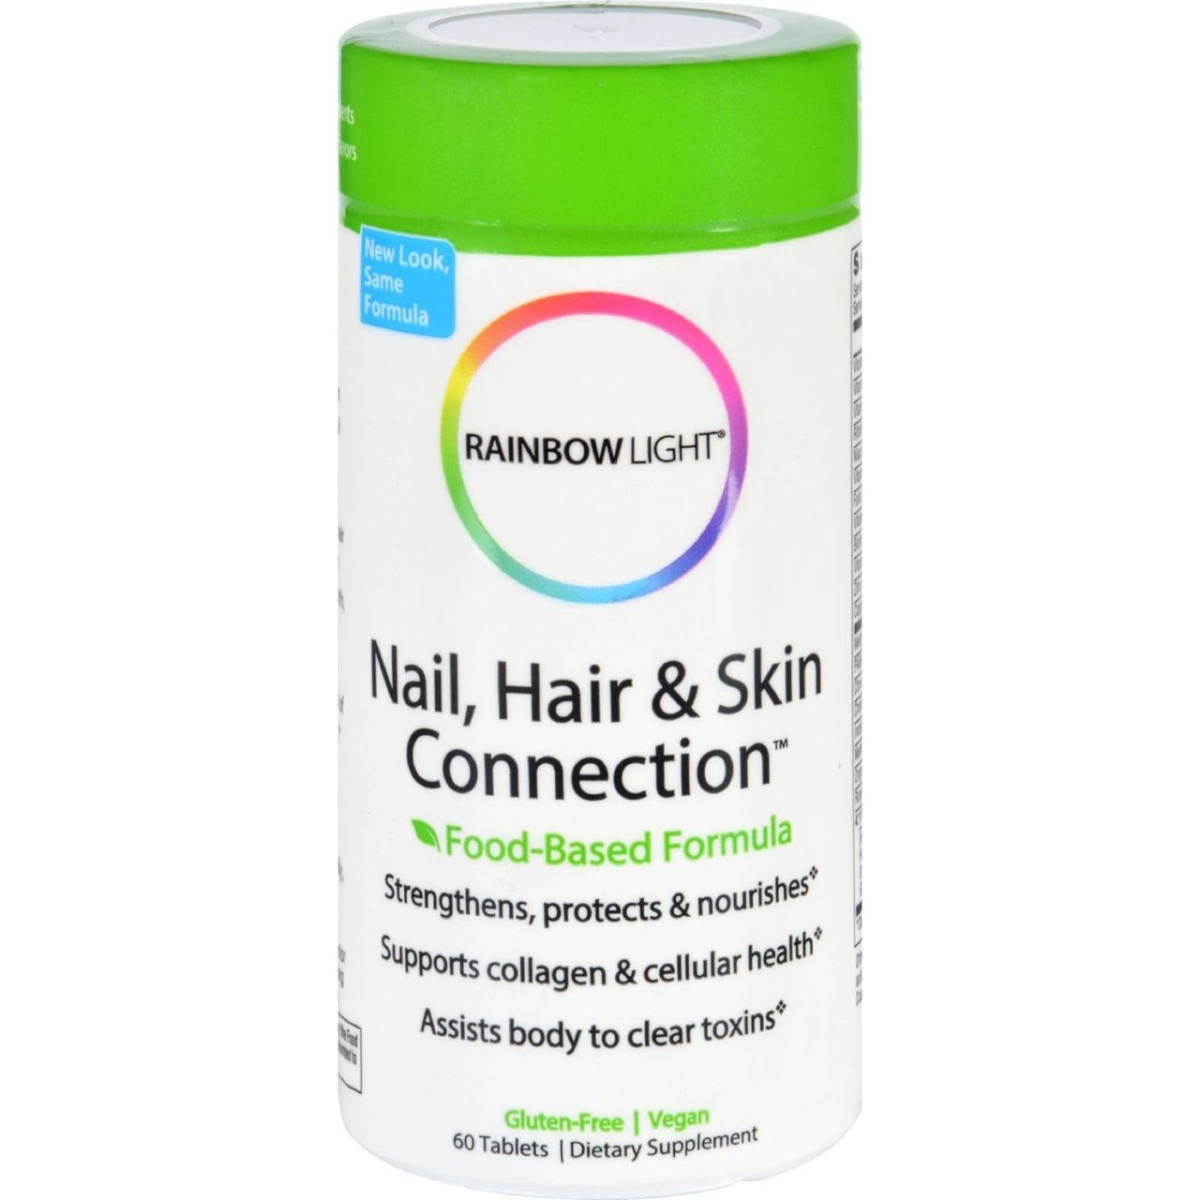 Hg0610444 Nail Hair & Skin Connection - 60 Tablets